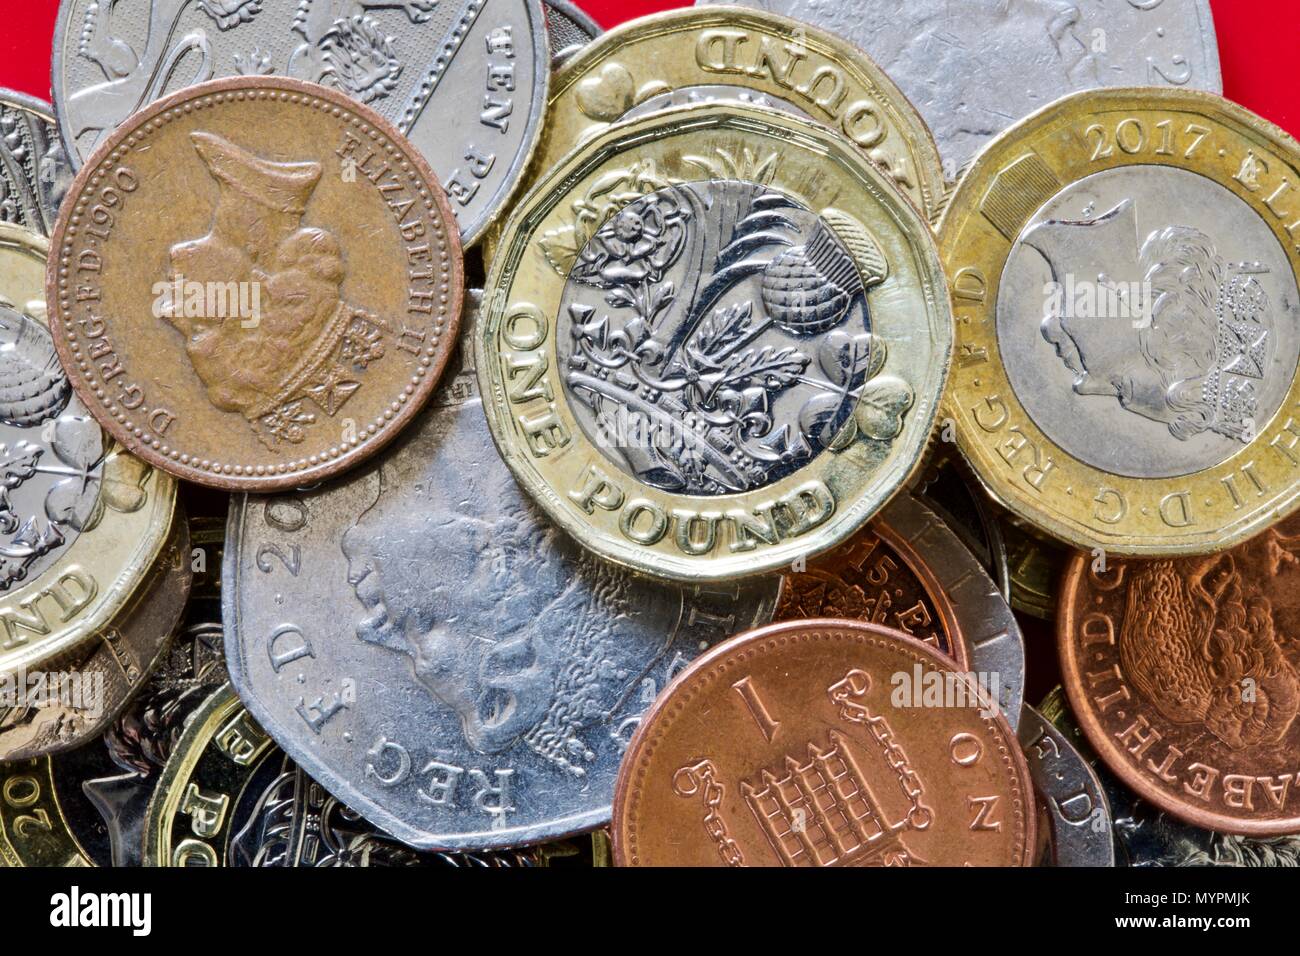 Colección de monedas británicas sobre un fondo rojo. Foto de stock